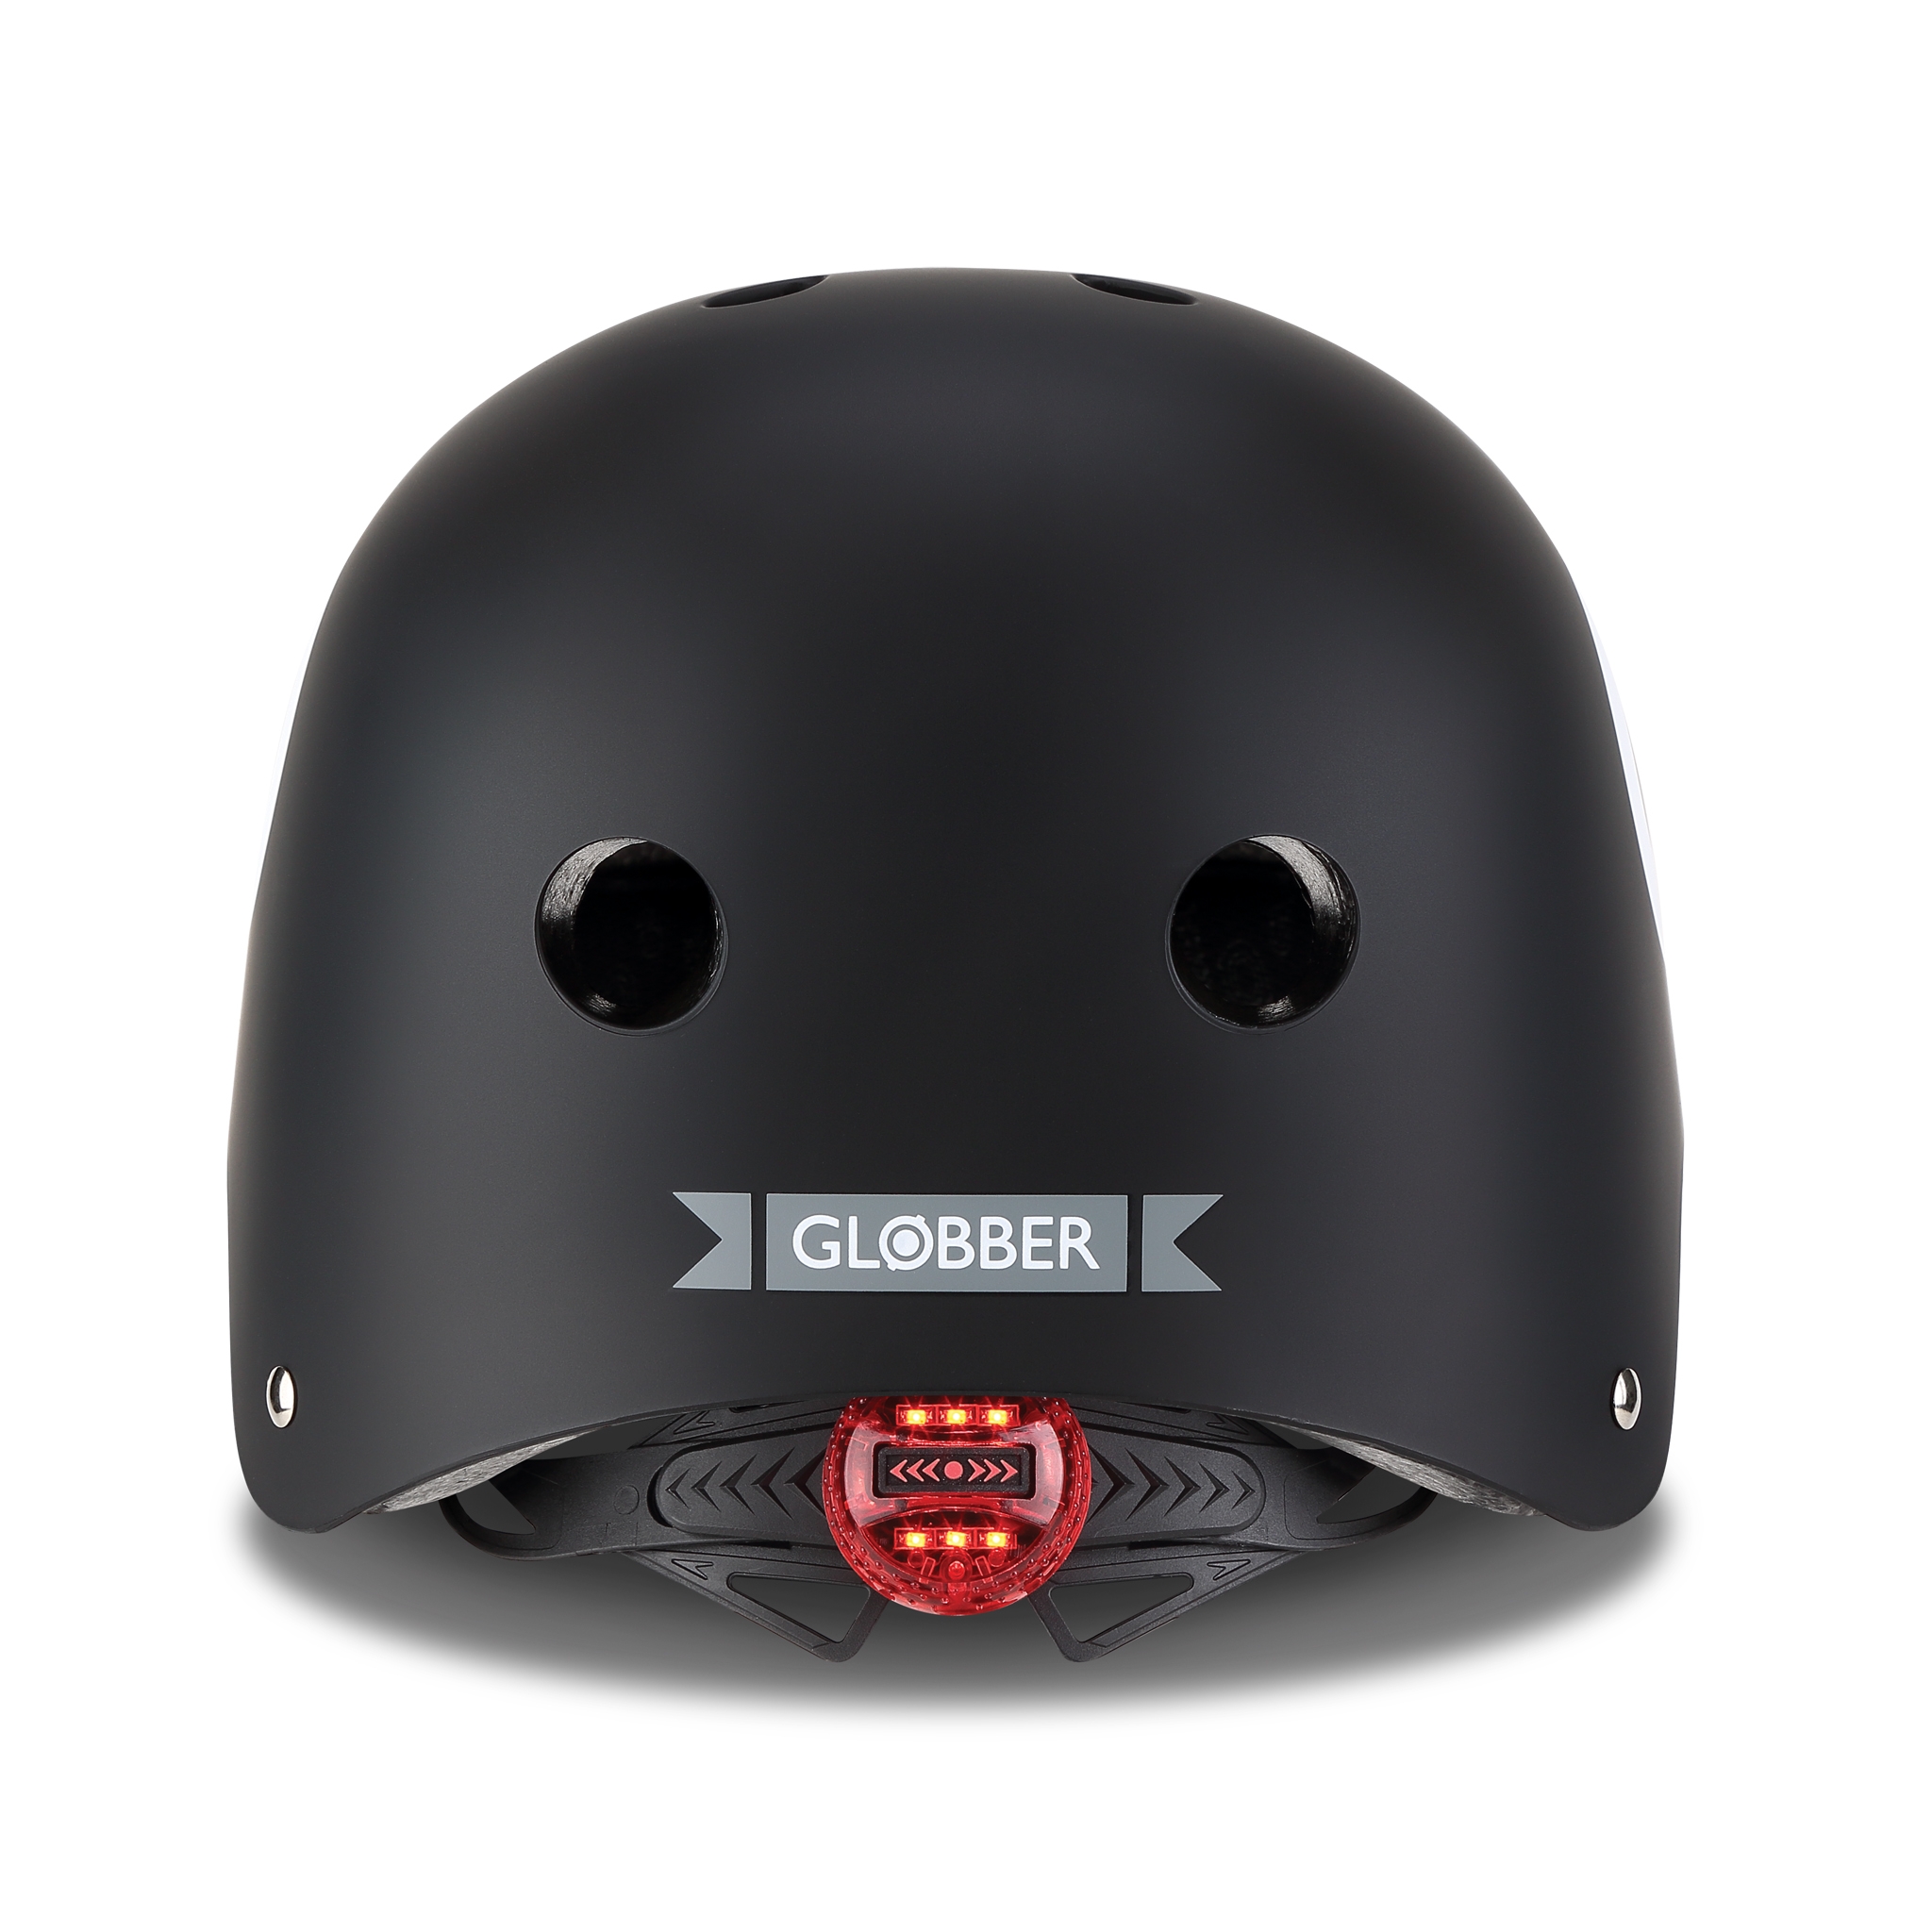 ELITE-helmets-scooter-helmets-for-kids-with-LED-lights-safe-helmet-for-kids-black 2